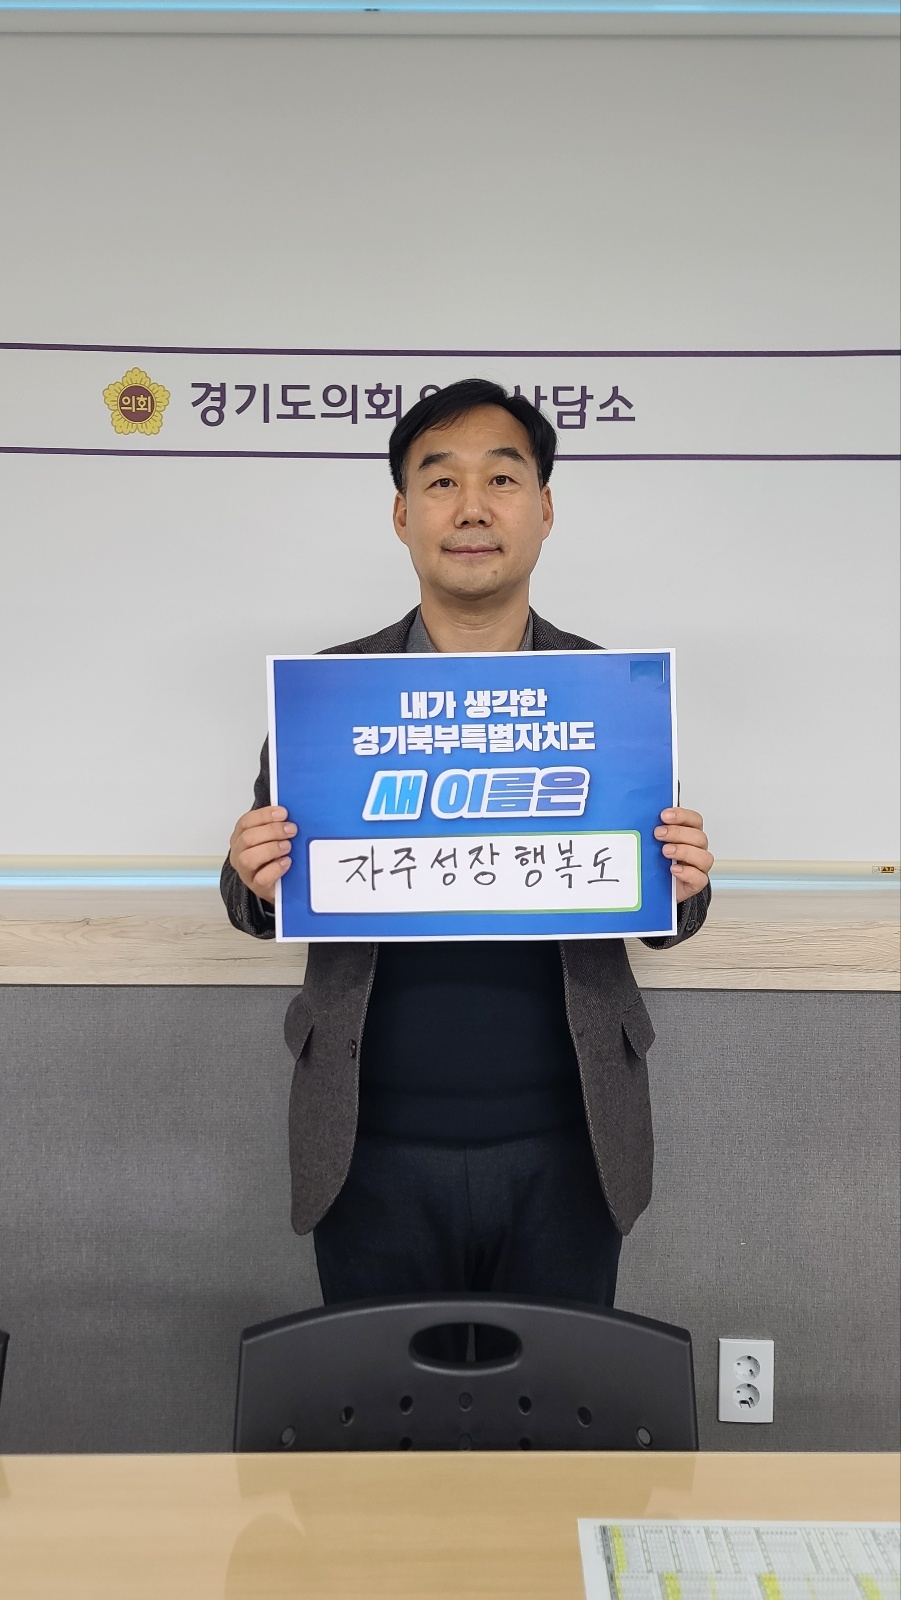 경기도의회 윤종영 의원, 경기북부특별자치도 새이름 짓기 릴레이 캠페인 시